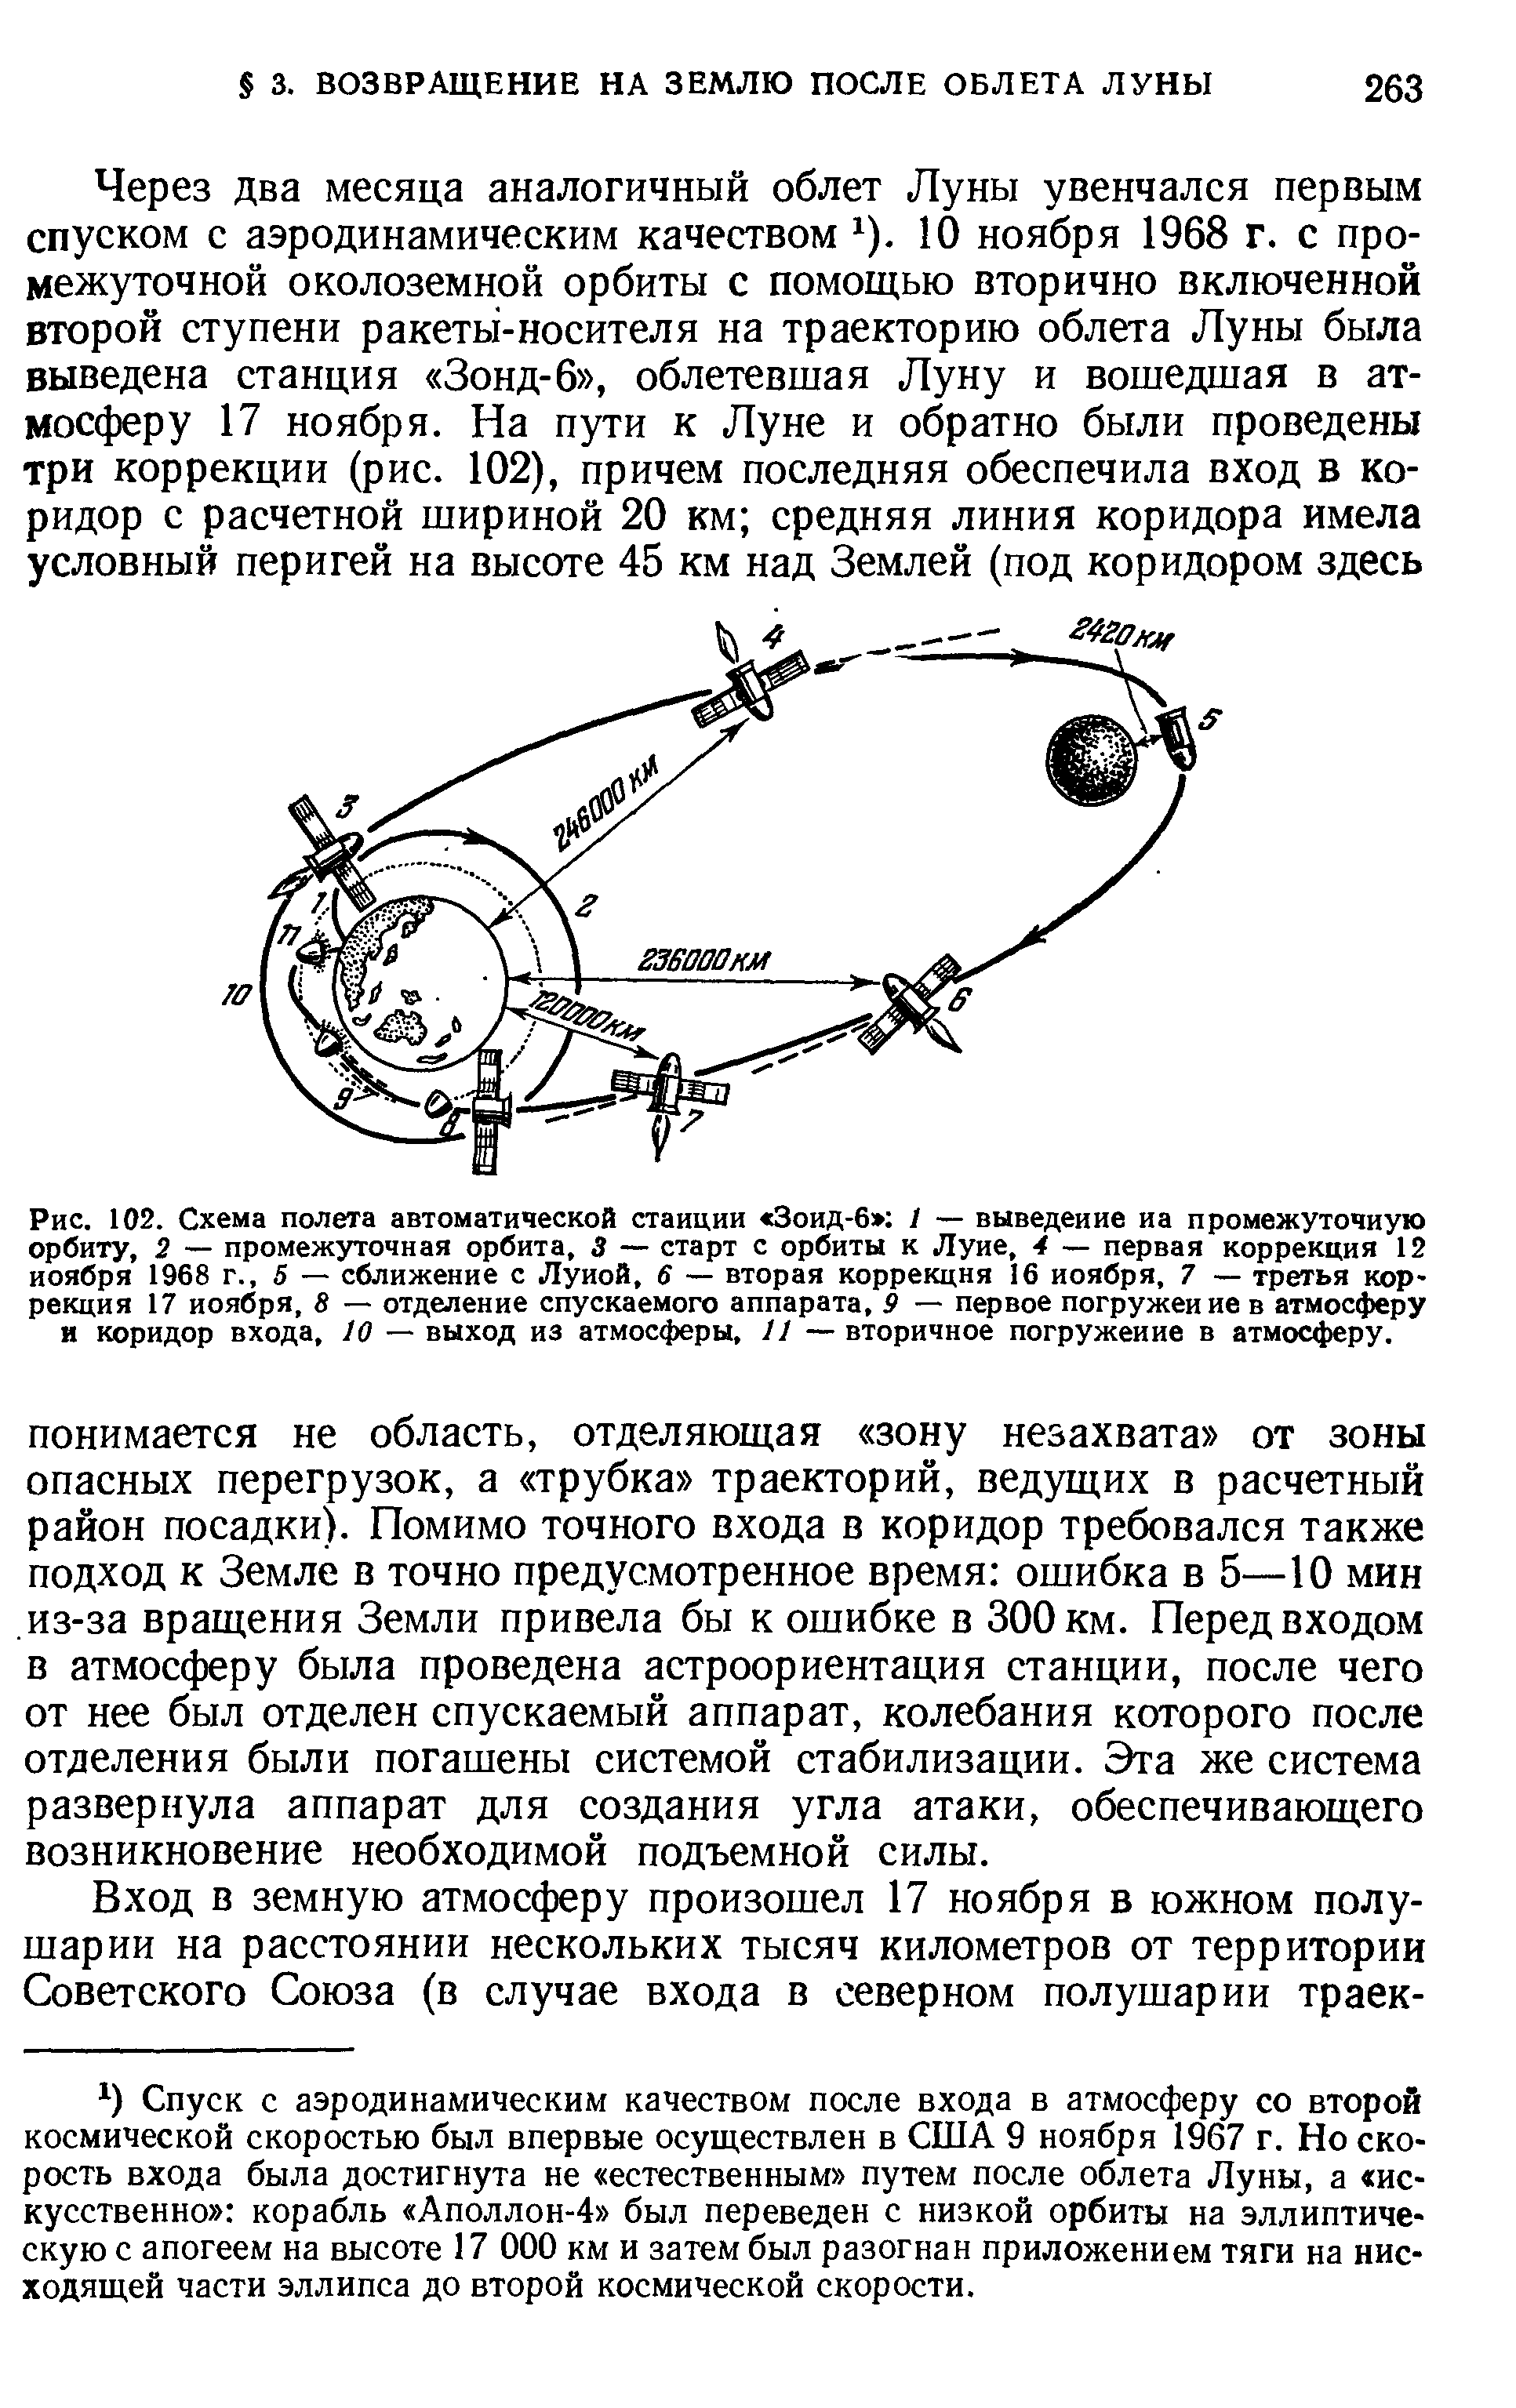 Рис. 102. Схема полета <a href="/info/51164">автоматической станции</a> Зоид-6 / — выведение иа <a href="/info/357779">промежуточную орбиту</a>, 2 — <a href="/info/357779">промежуточная орбита</a>, 3 — старт с орбиты к Луне, 4 — первая коррекция 12 ноября 1968 г., 5 — сближение с Луной, 6 — вторая коррекция 16 ноября, 7 — третья коррекция 17 ноября, 8 — отделение спускаемого аппарата, 9 — первое погружение в атмосферу и коридор входа, 10 — выход из атмосферы, 11 — вторичное погружение в атмосферу.
